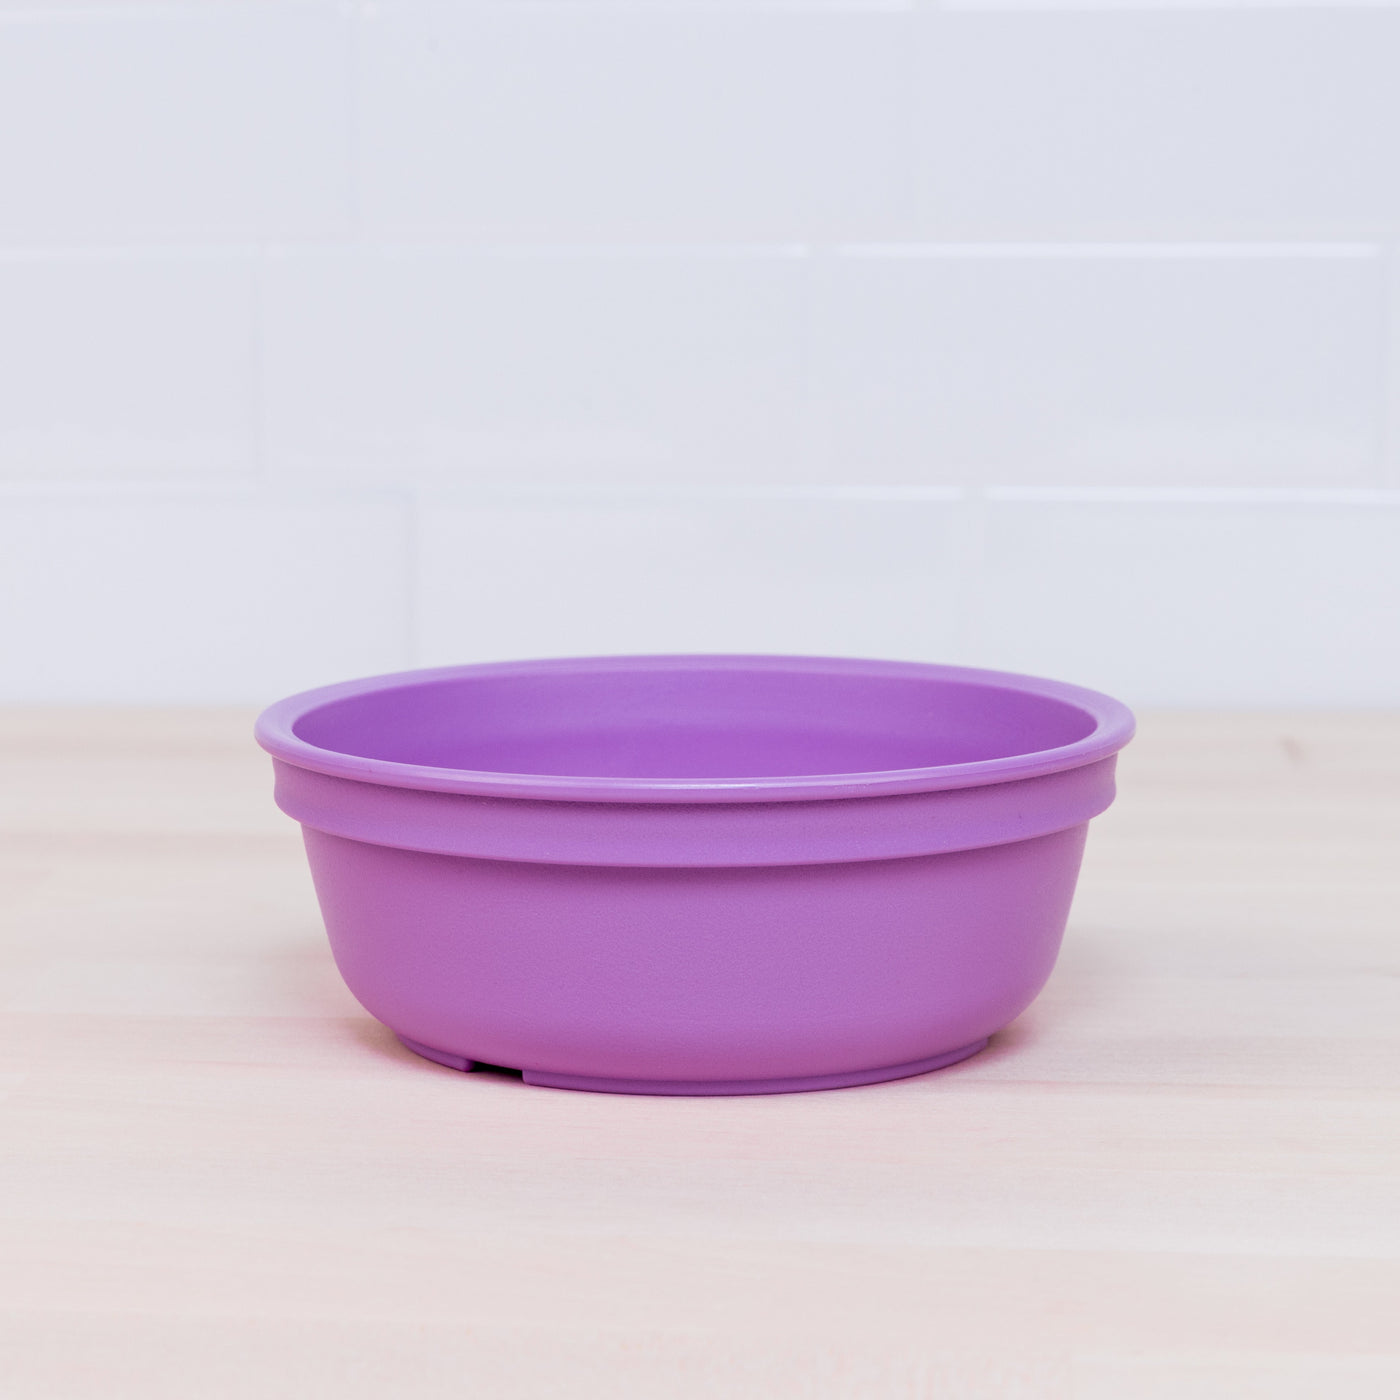 Small Bowl Feeding Re-Play Purple 